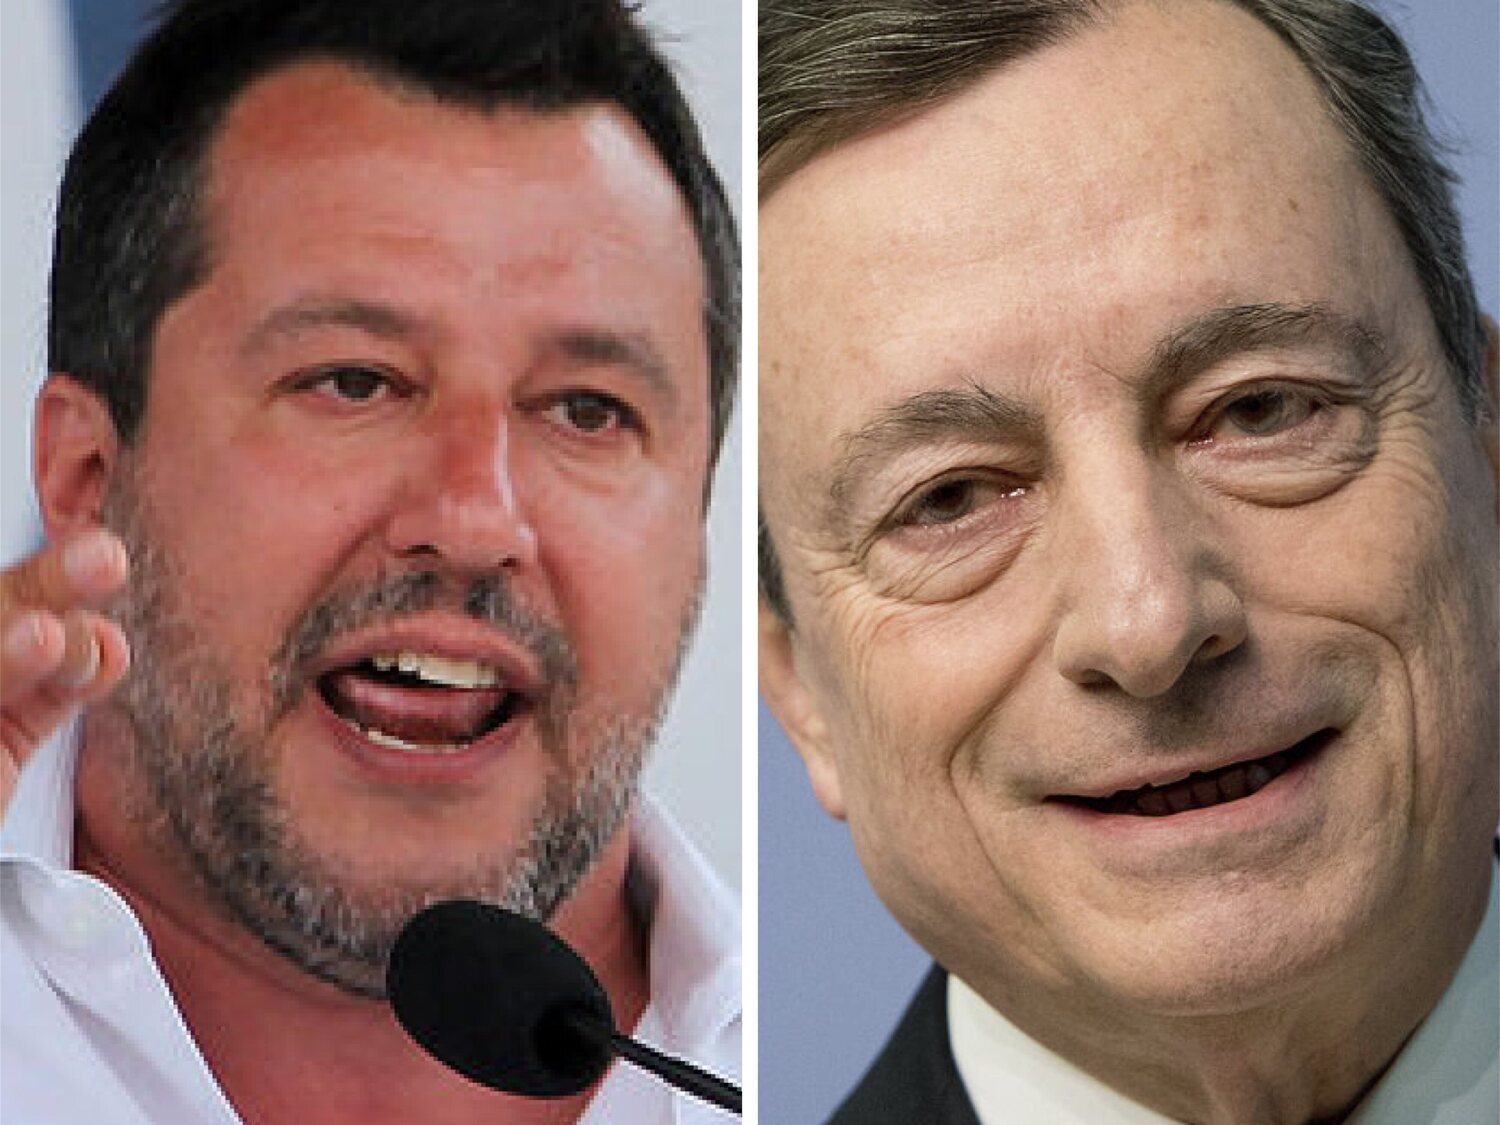 Putin habría orquestado la caída de Draghi con Salvini como escudero, según cita La Stampa de la Inteligencia italiana